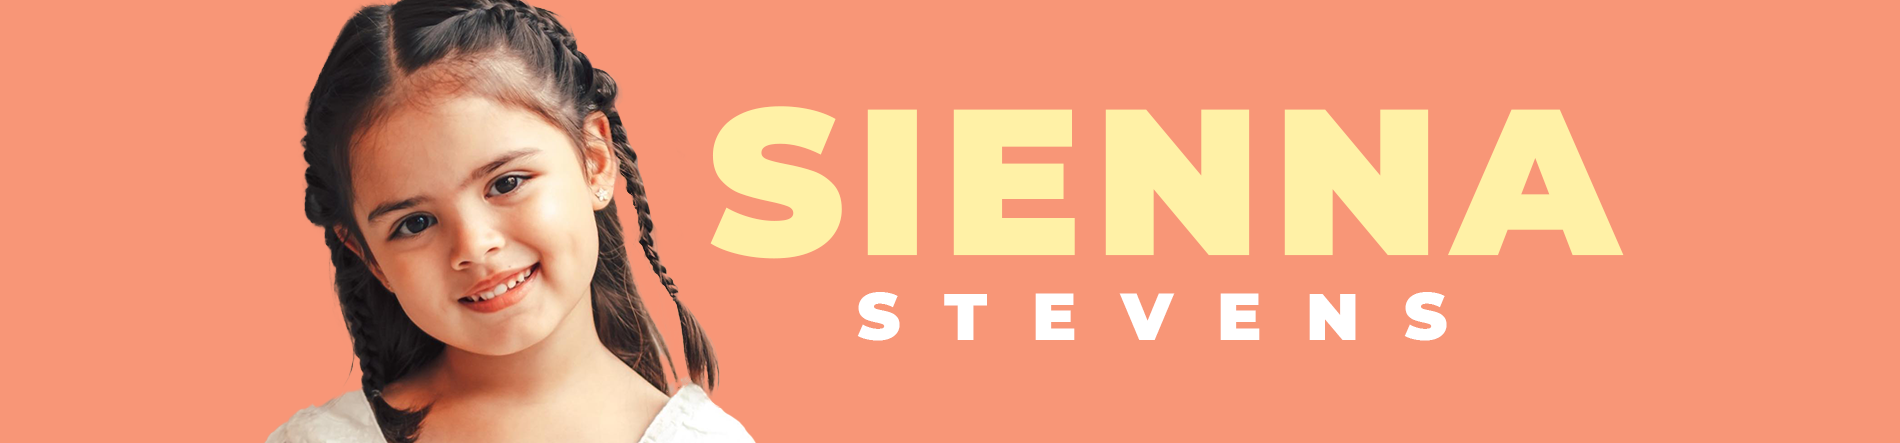 Sienna Stevens Desktop Banner